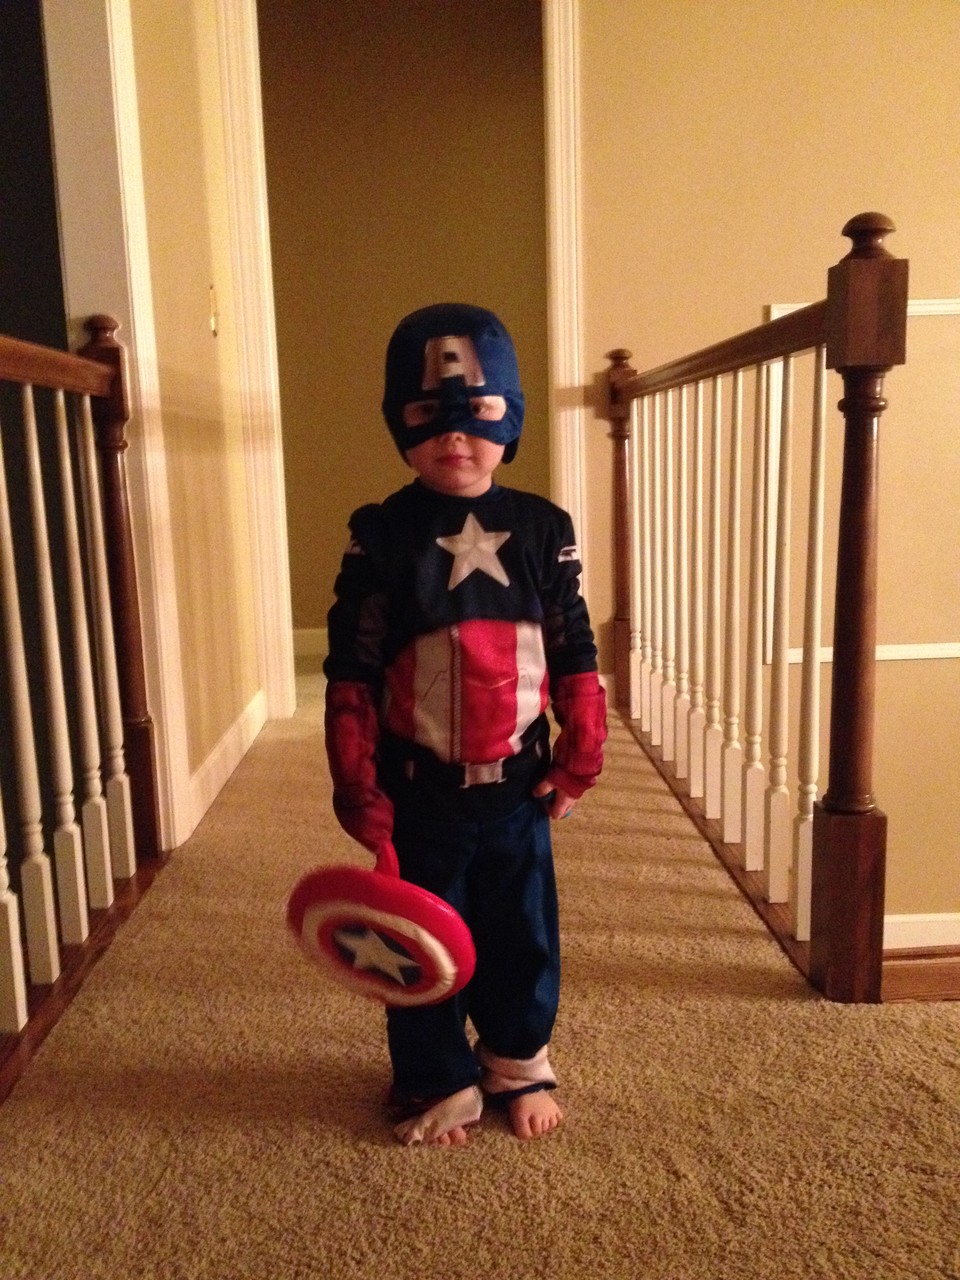 Captain America!